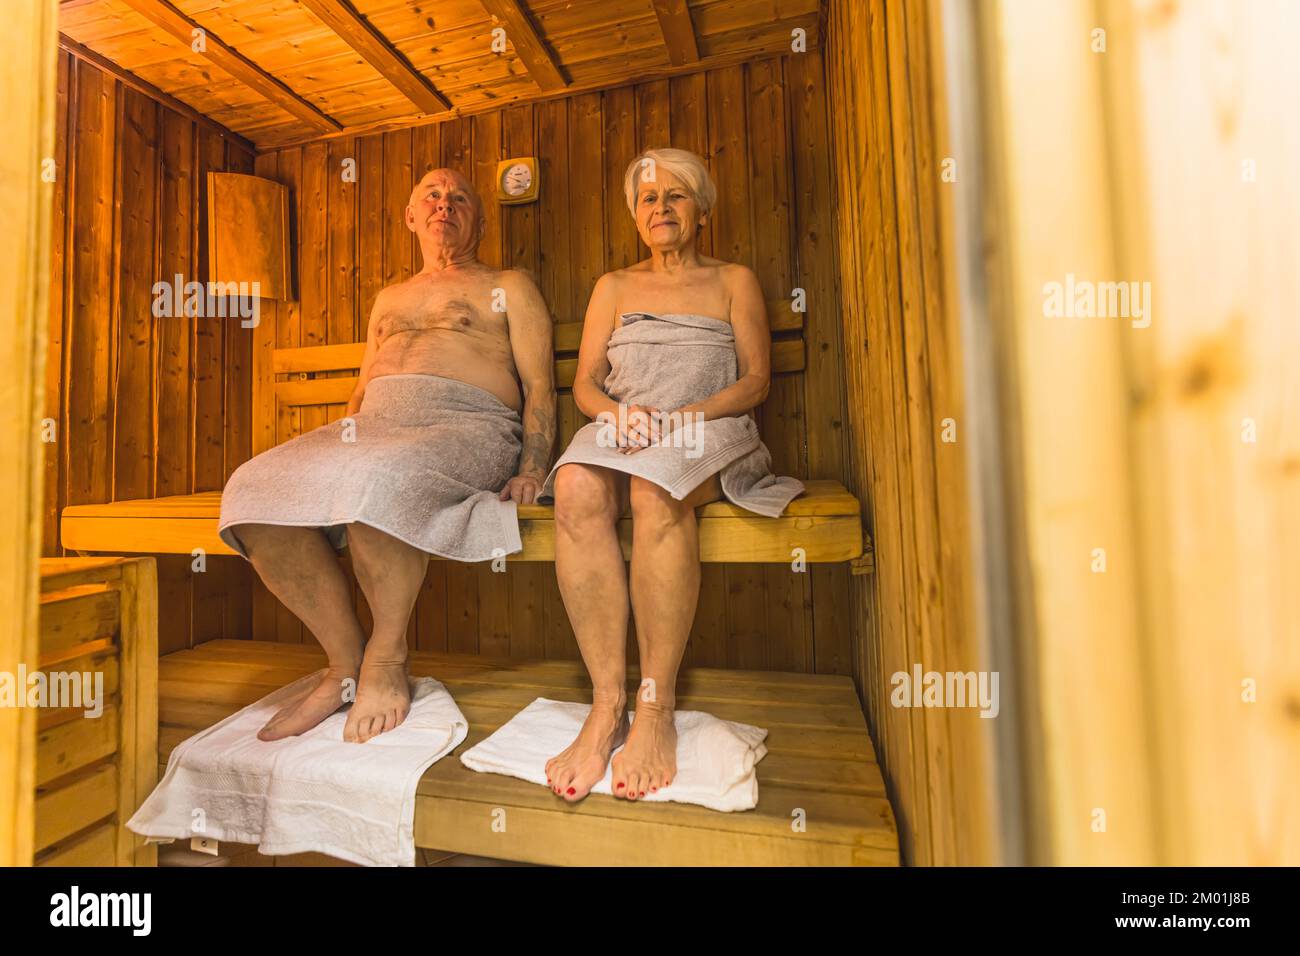 Activité de loisirs et concept de détente. Prise de vue intérieure pleine longueur de deux grands-parents blancs qui s'assoient dans un sauna en bois avec des serviettes sous leurs pieds. Photo de haute qualité Banque D'Images